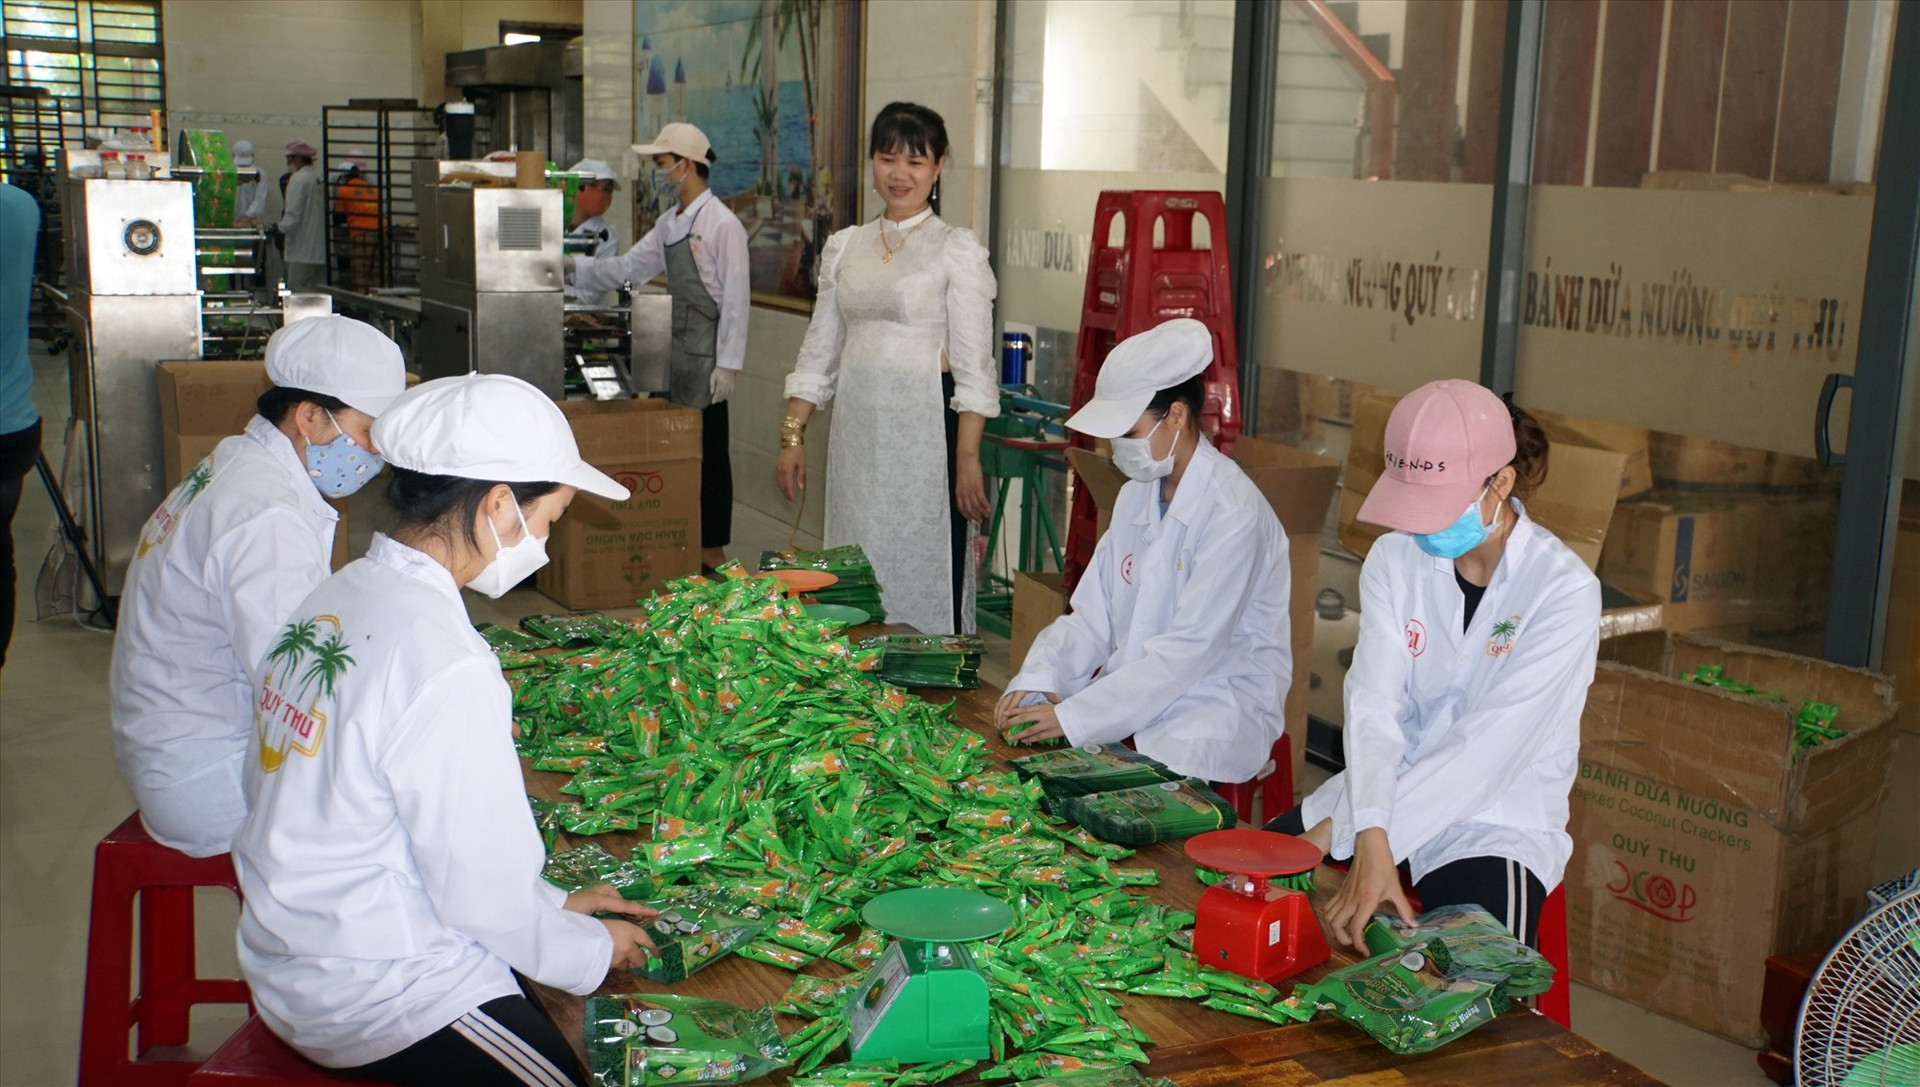 Cơ sở sản xuất bánh dừa nướng Quý Thu mở rộng sản xuất nhờ chuyển đổi số. Ảnh: HUYNH HÀ